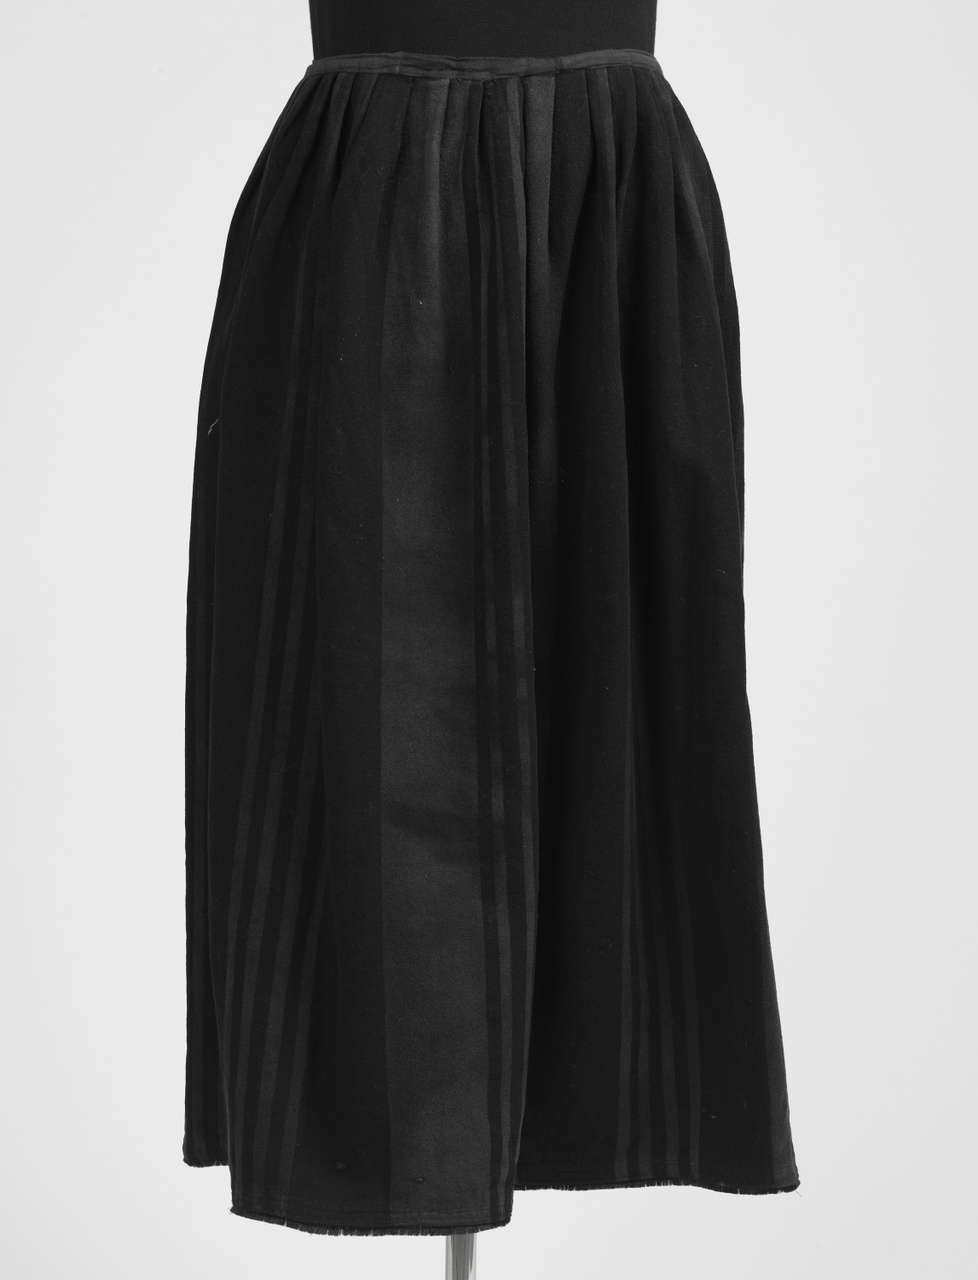 Zwart geverfde rok